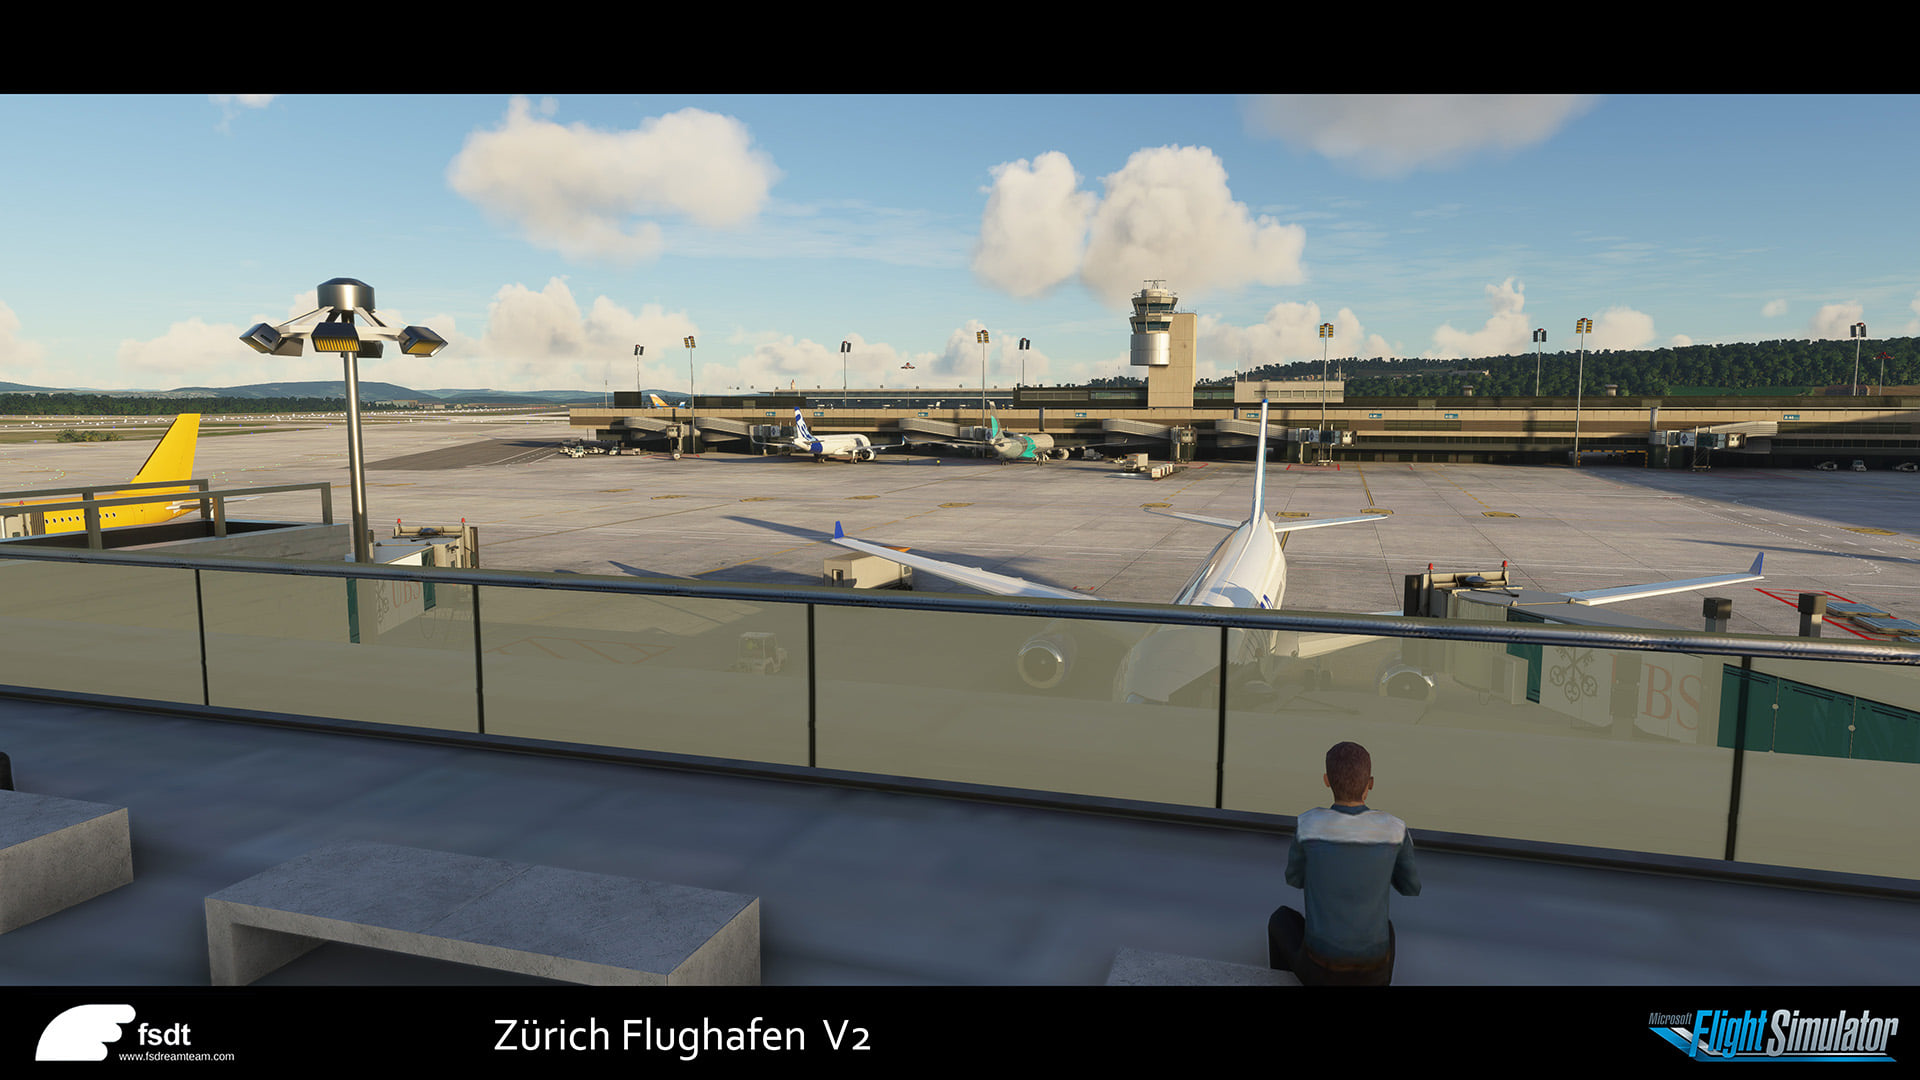 Zurich airport msfs 4